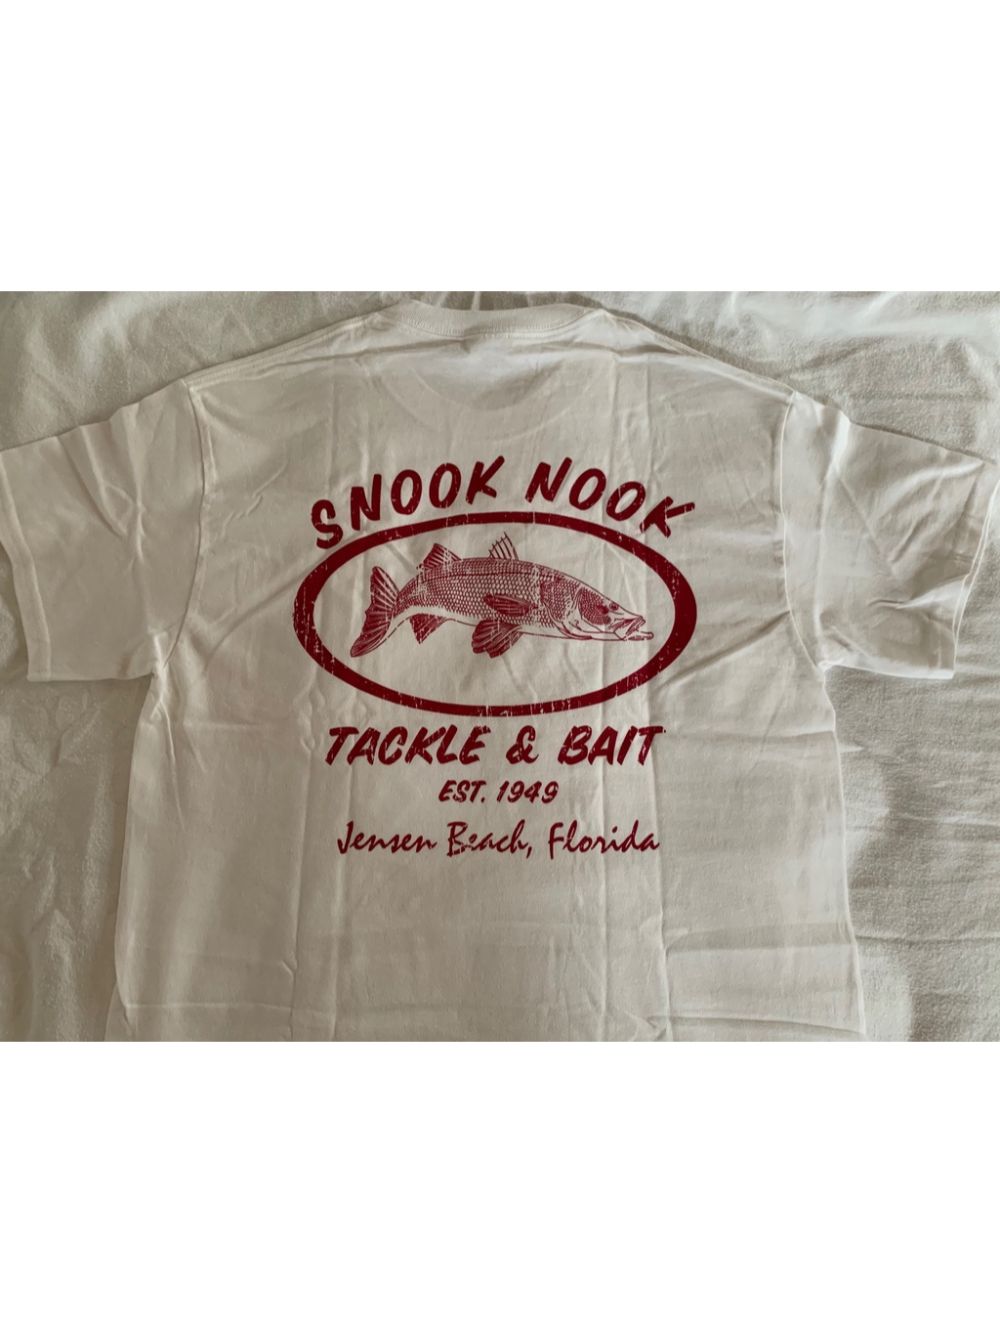 Snook Nook Grey Captain Shirt - Snook Nook Bait & Tackle